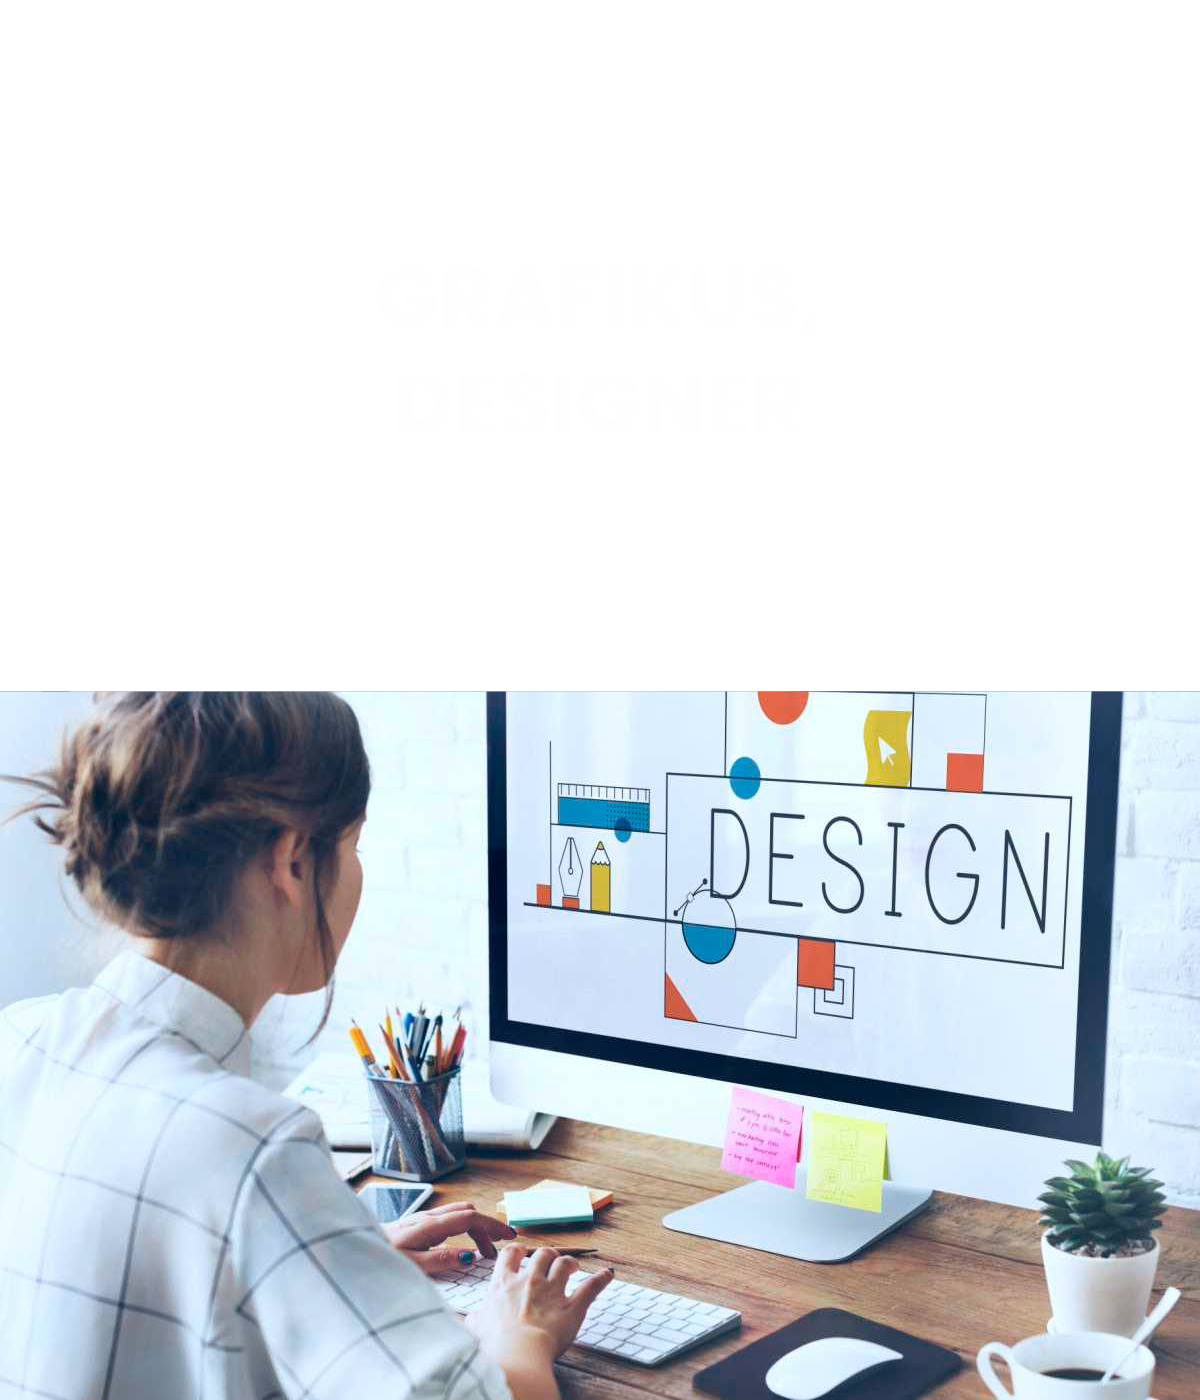 Grafikus, designer